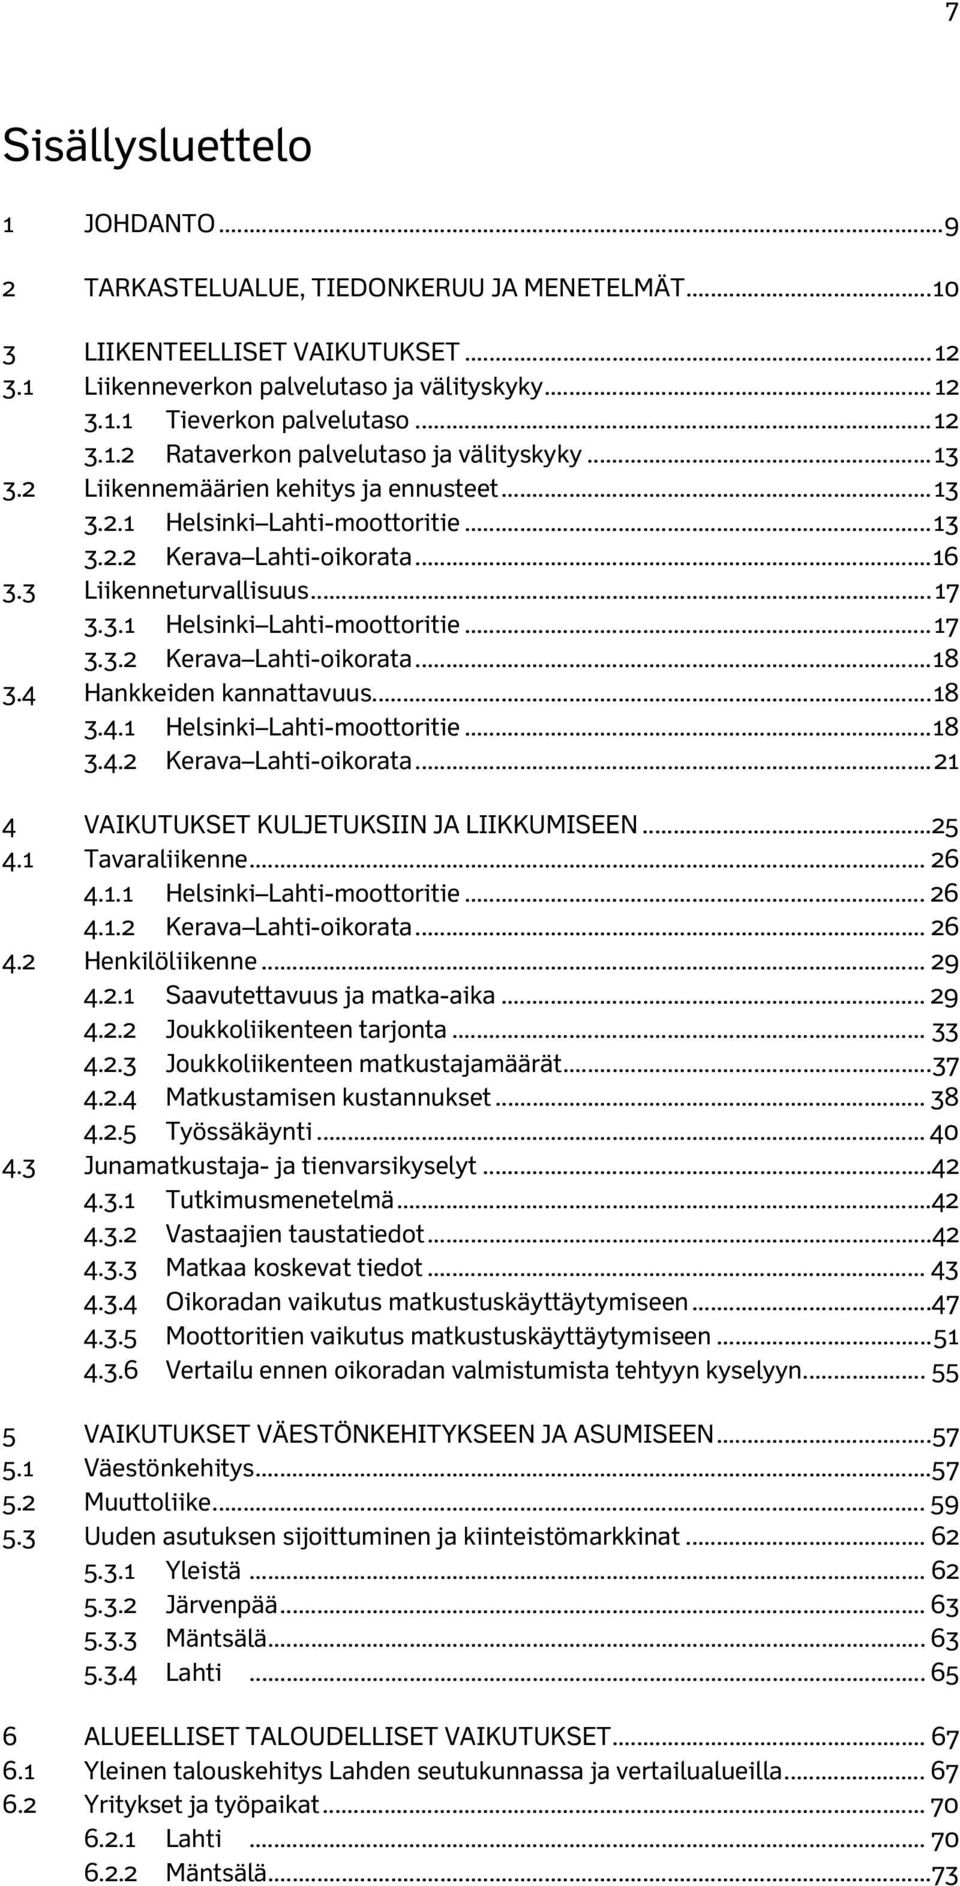 3 Liikenneturvallisuus... 17 3.3.1 Helsinki Lahti-moottoritie... 17 3.3.2 Kerava Lahti-oikorata... 18 3.4 Hankkeiden kannattavuus... 18 3.4.1 Helsinki Lahti-moottoritie... 18 3.4.2 Kerava Lahti-oikorata... 21 4 VAIKUTUKSET KULJETUKSIIN JA LIIKKUMISEEN.